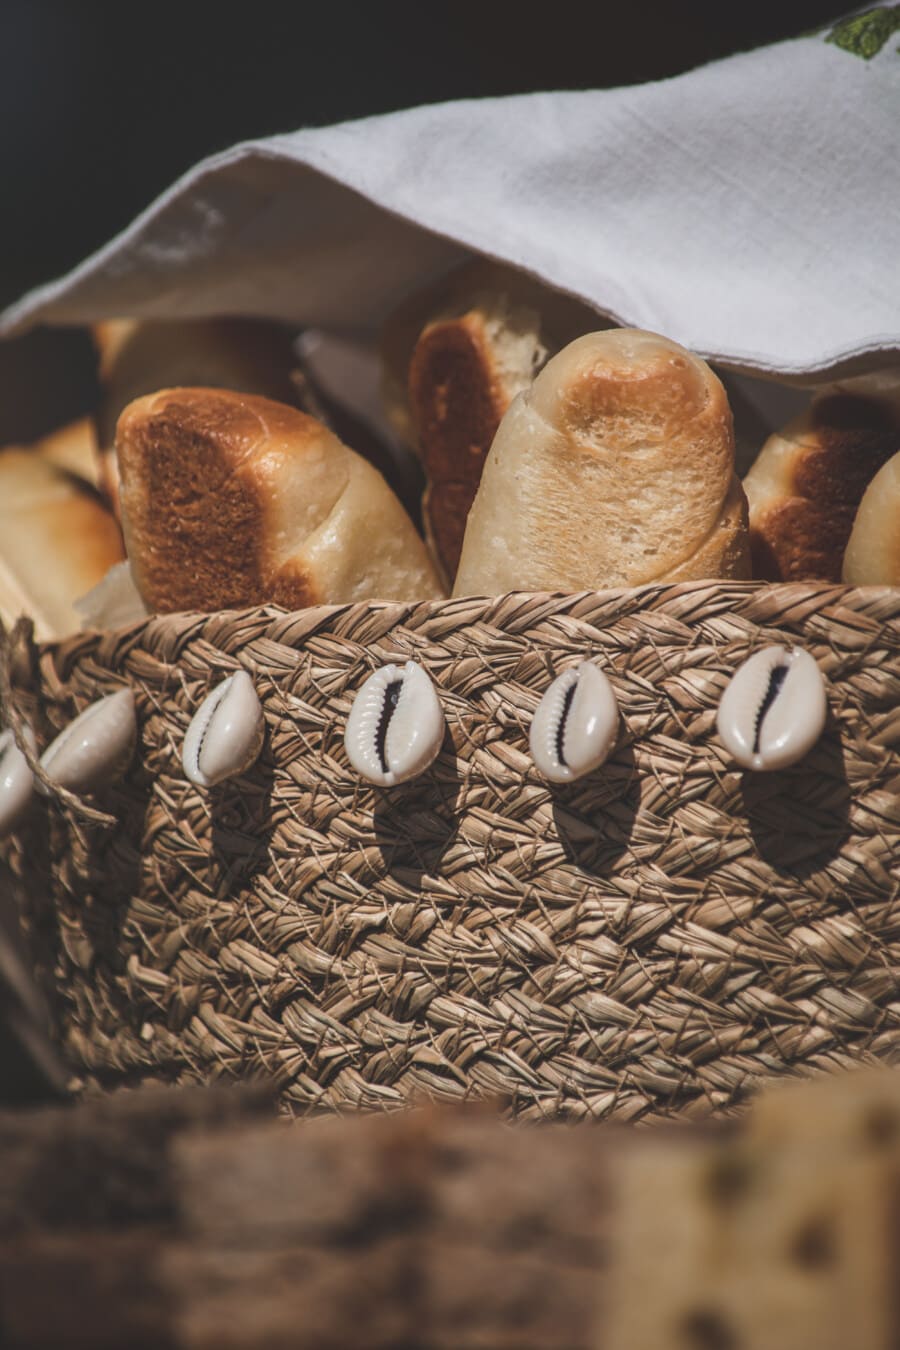 domácí, celozrný chléb, chléb, tradiční, proutěný koš, mušle, dekorace, jídlo, zátiší, příroda